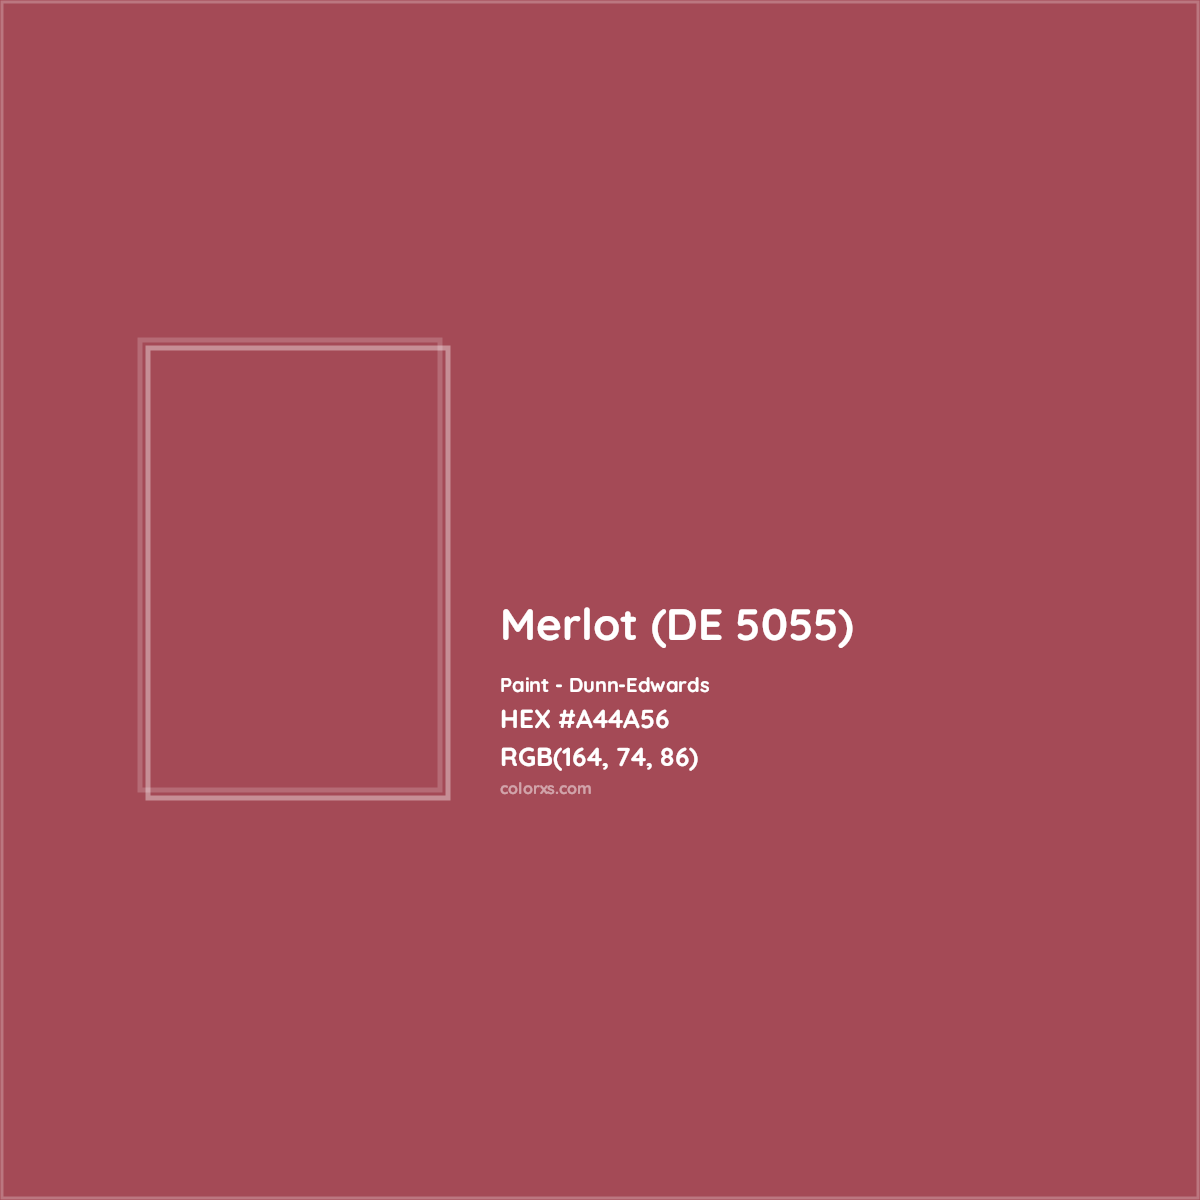 HEX #A44A56 Merlot (DE 5055) Paint Dunn-Edwards - Color Code